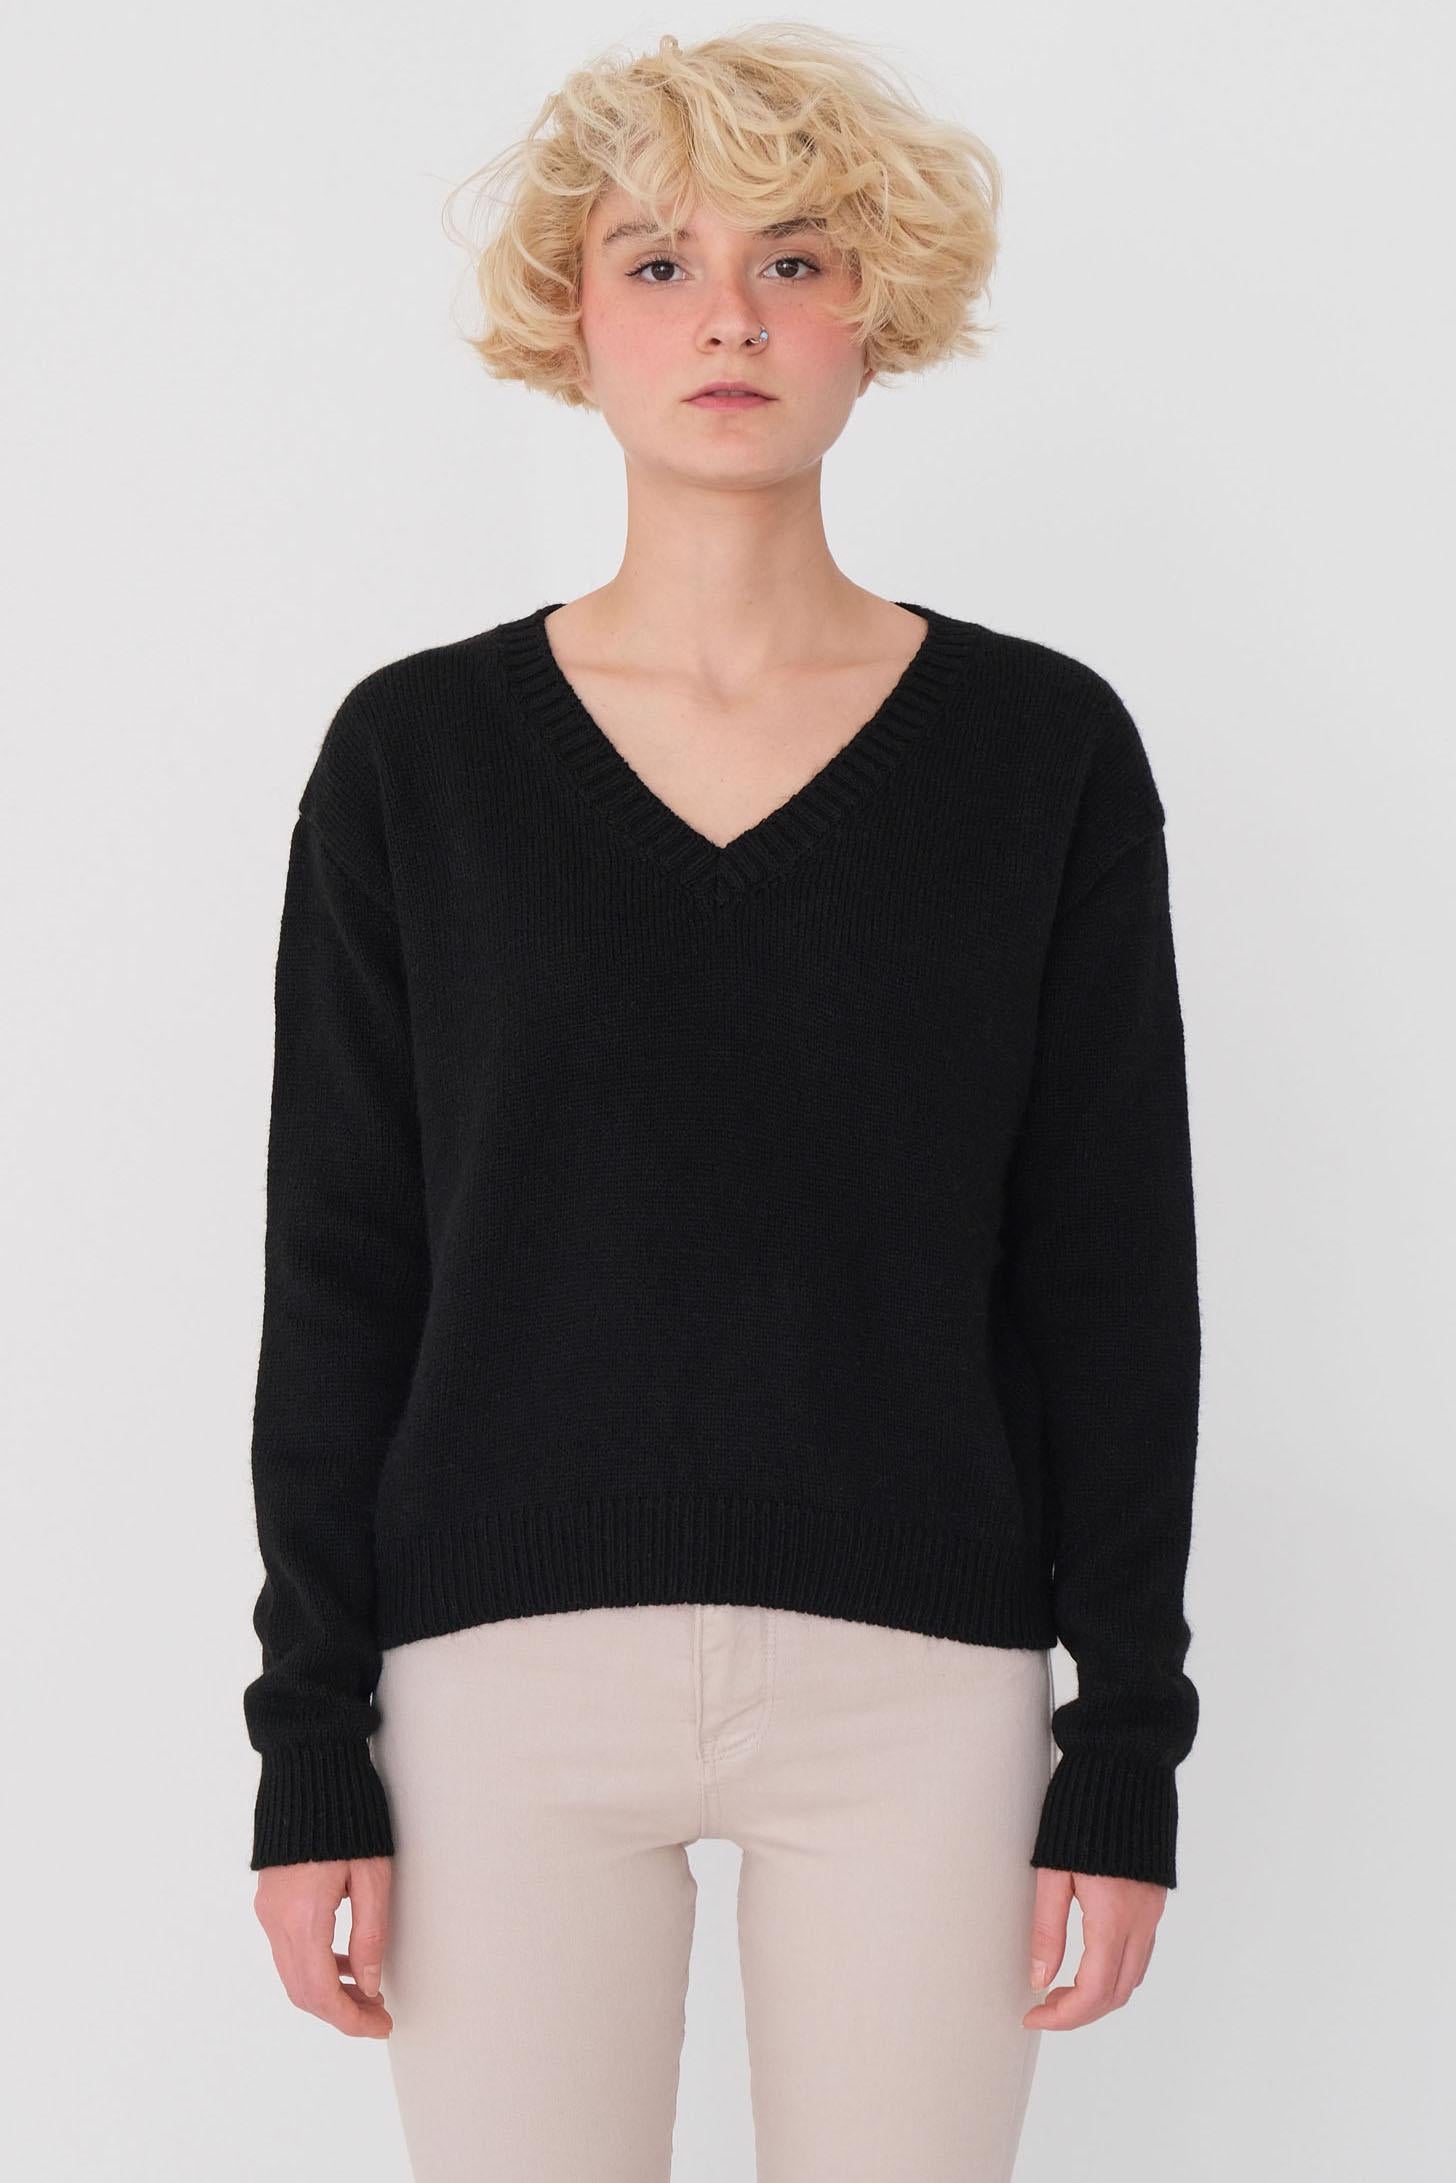 Image of Women's V Neck Black Sweater